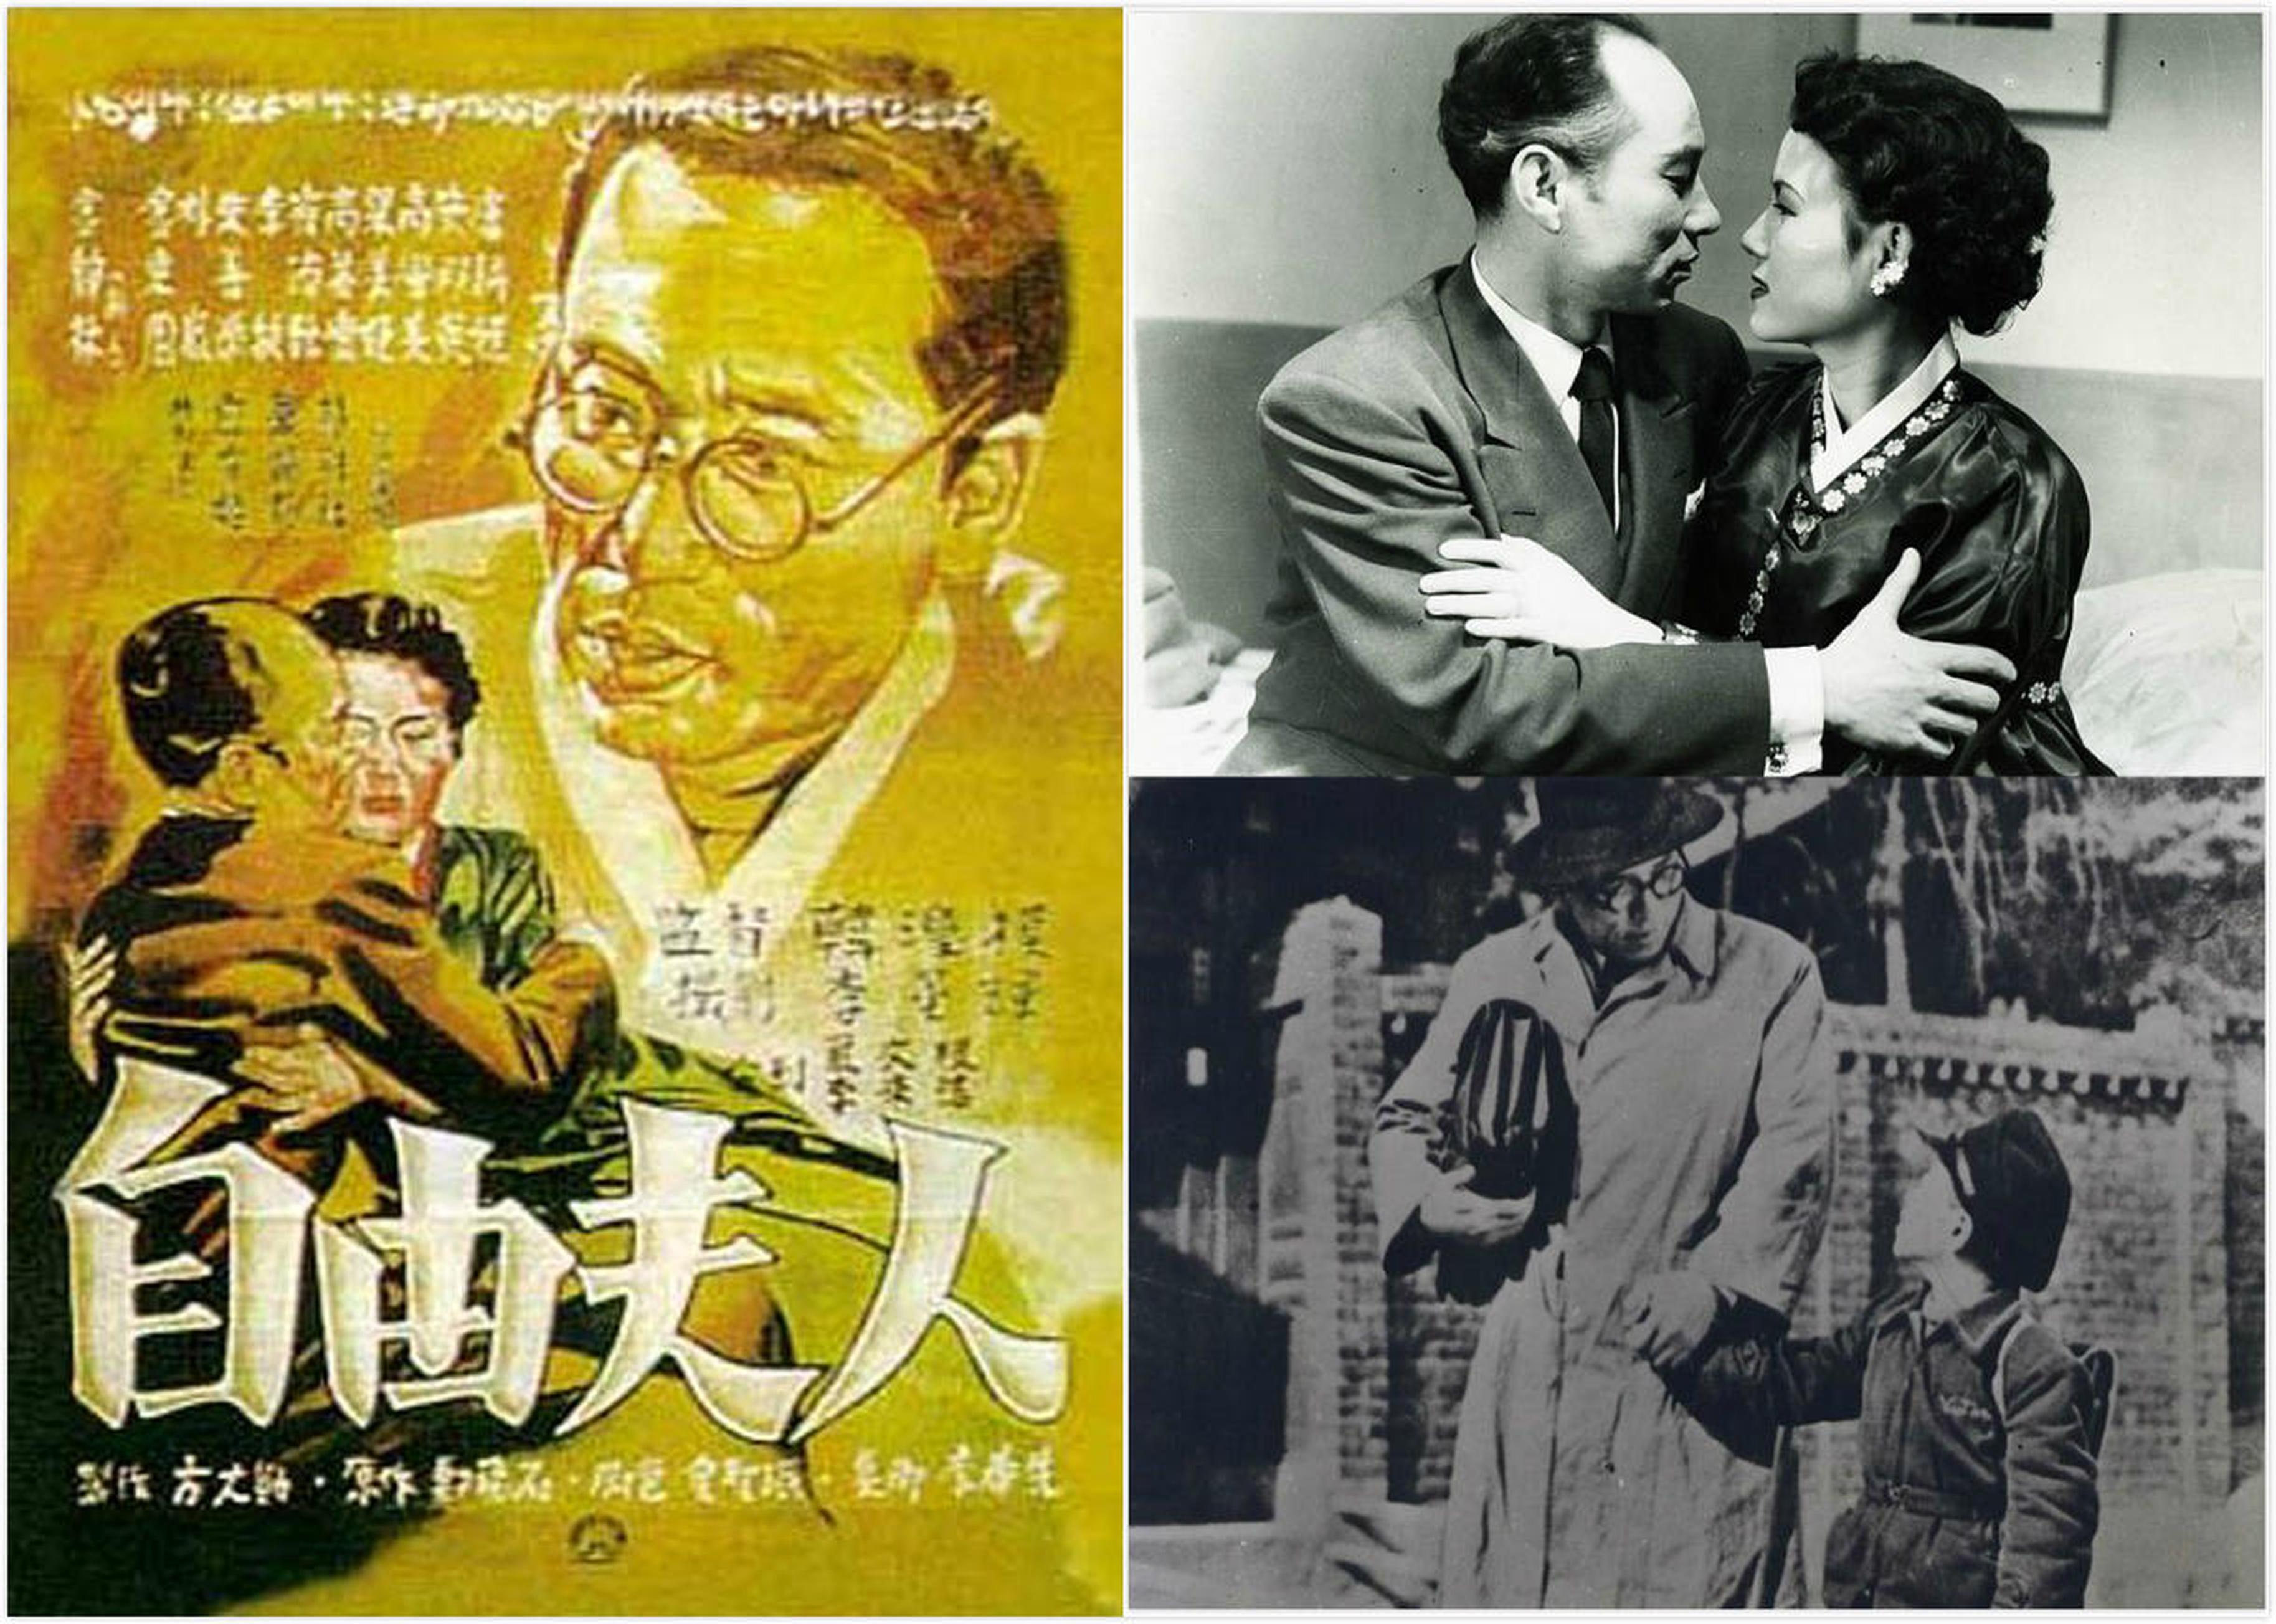 【1950-1960】《自由夫人》（1956）导演韩滢模。影片反映了解放后的韩国社会受到近代化、资本主义及西欧文化的复合影响，女性逐渐以独立的形象出现在人们视野当中，过去被强烈隐忍的原始性欲得到觉醒。